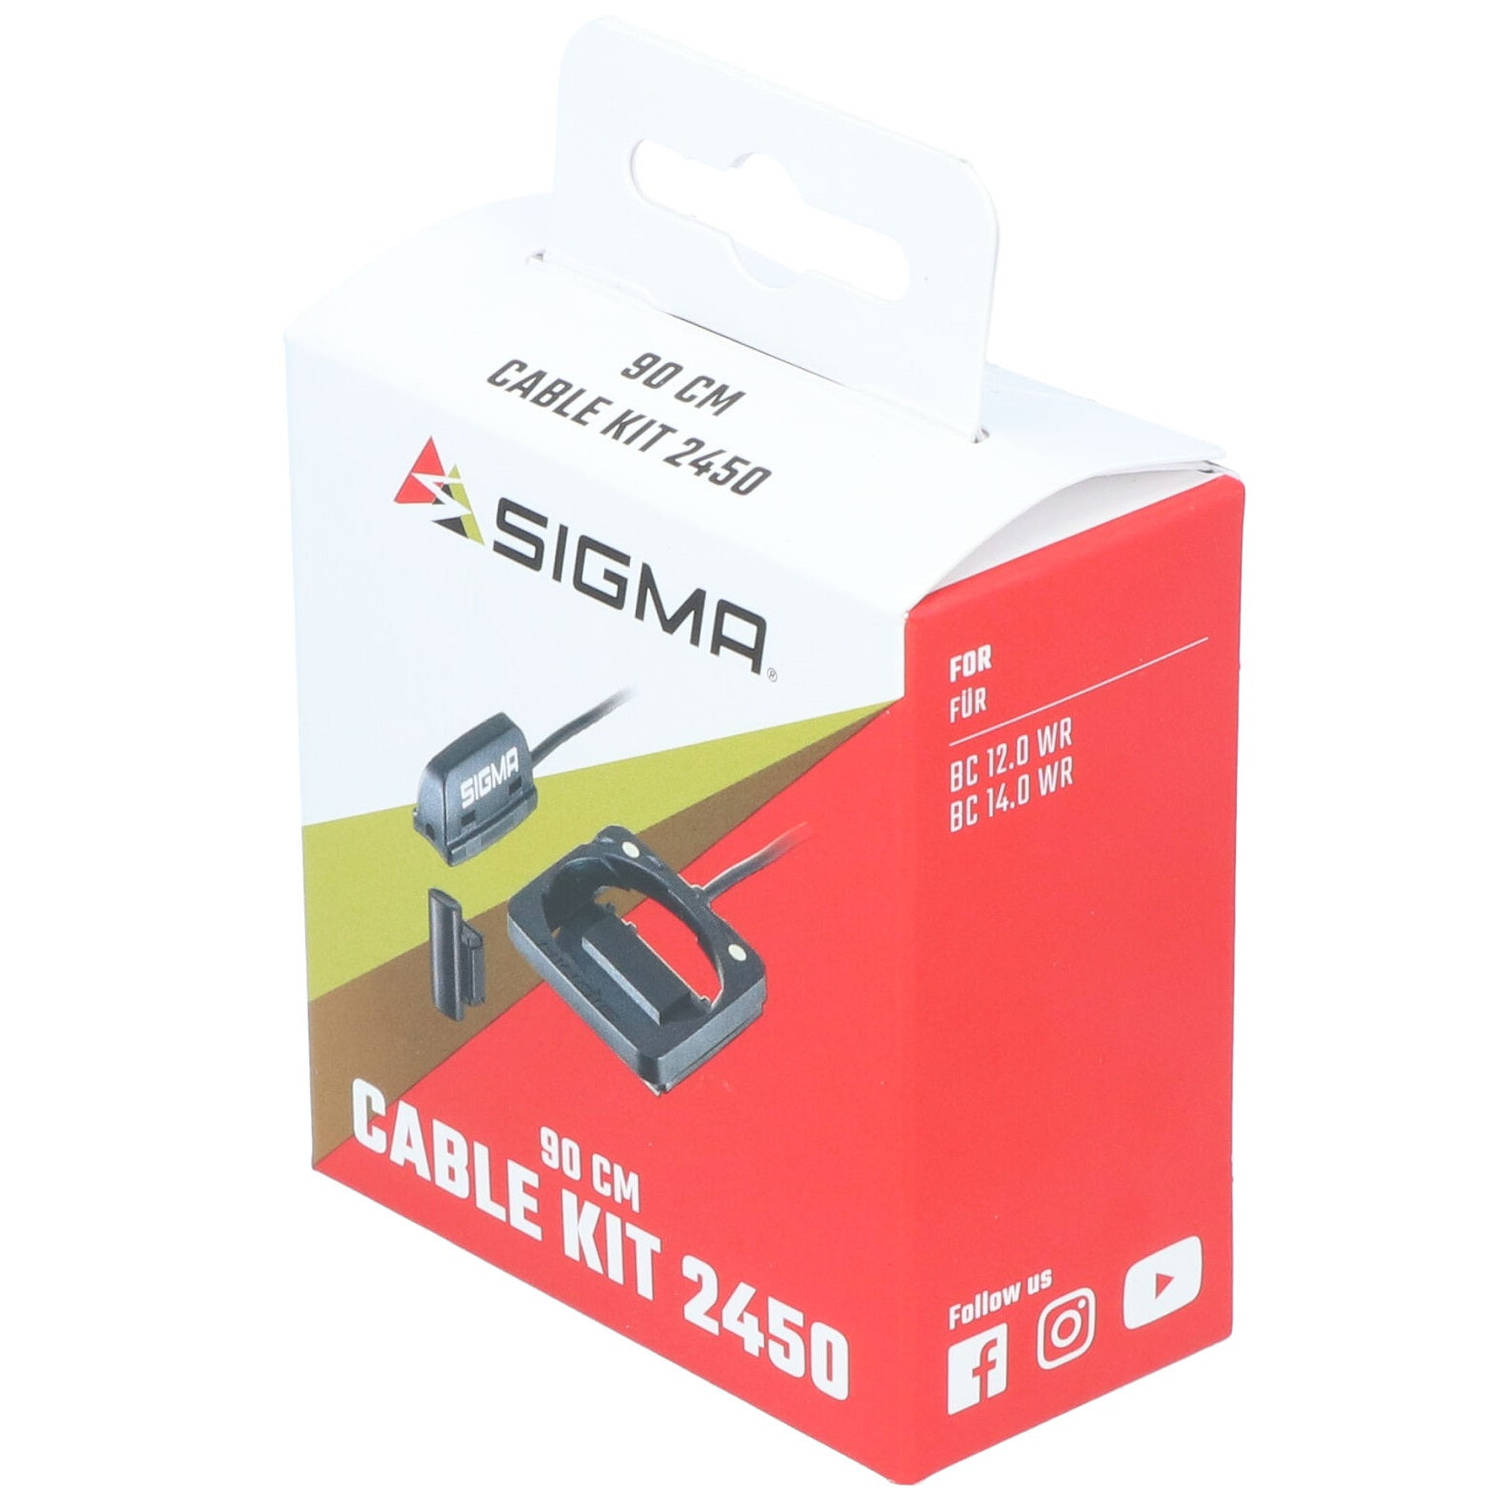 Sigma Houder Set Met Kabel En Magneet 90 Cm 2450 Original Serie 00544